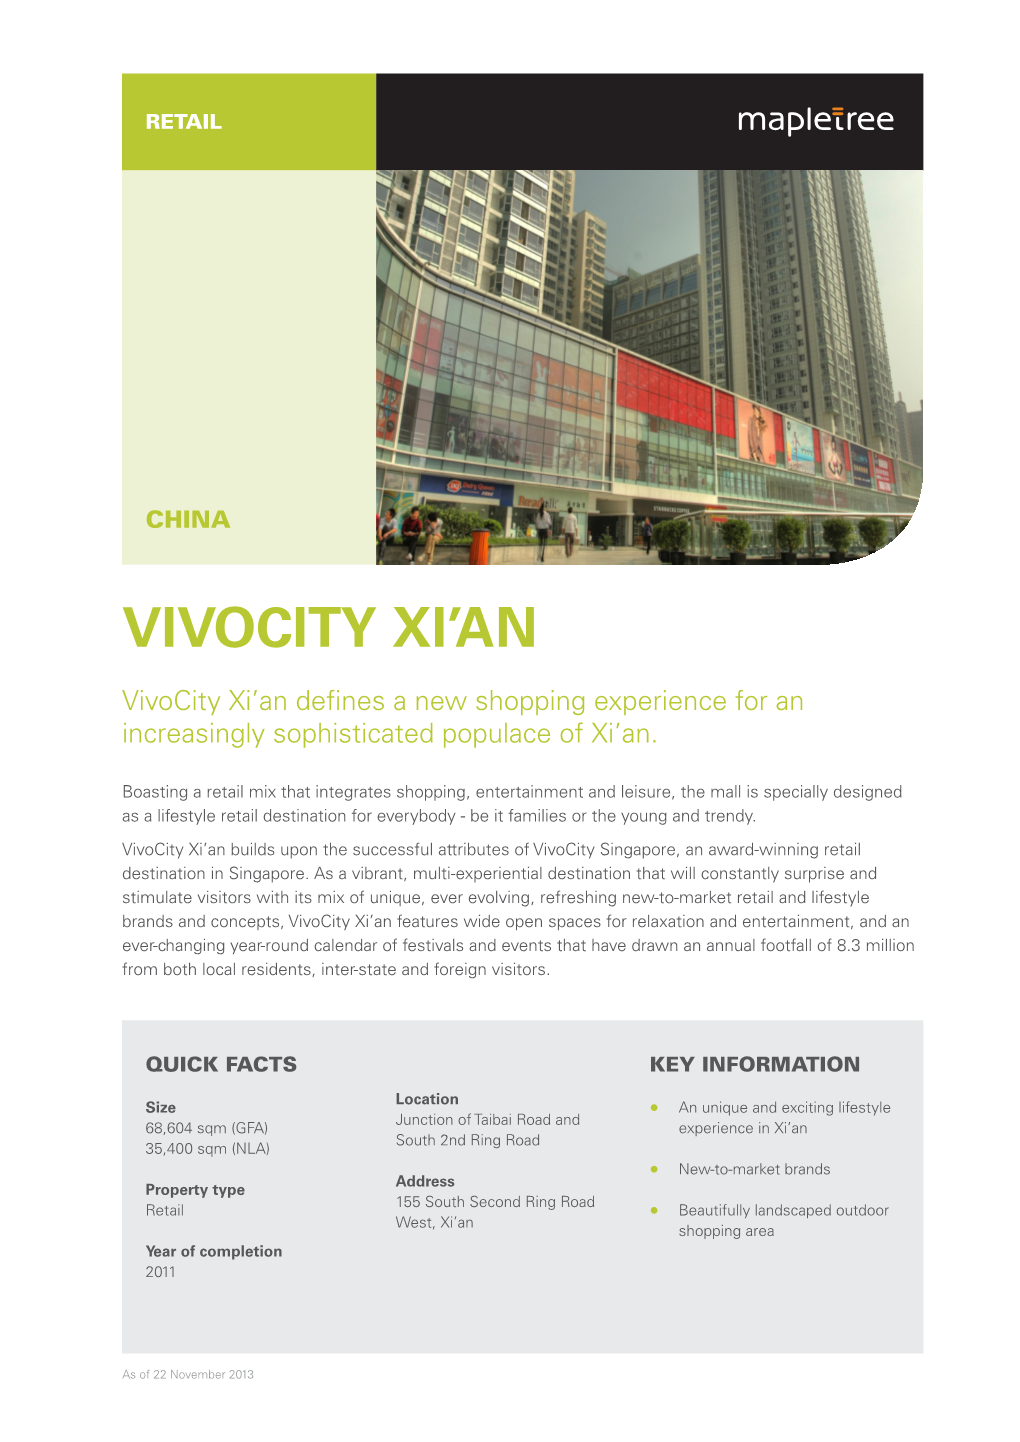 Vivocity Xi'an